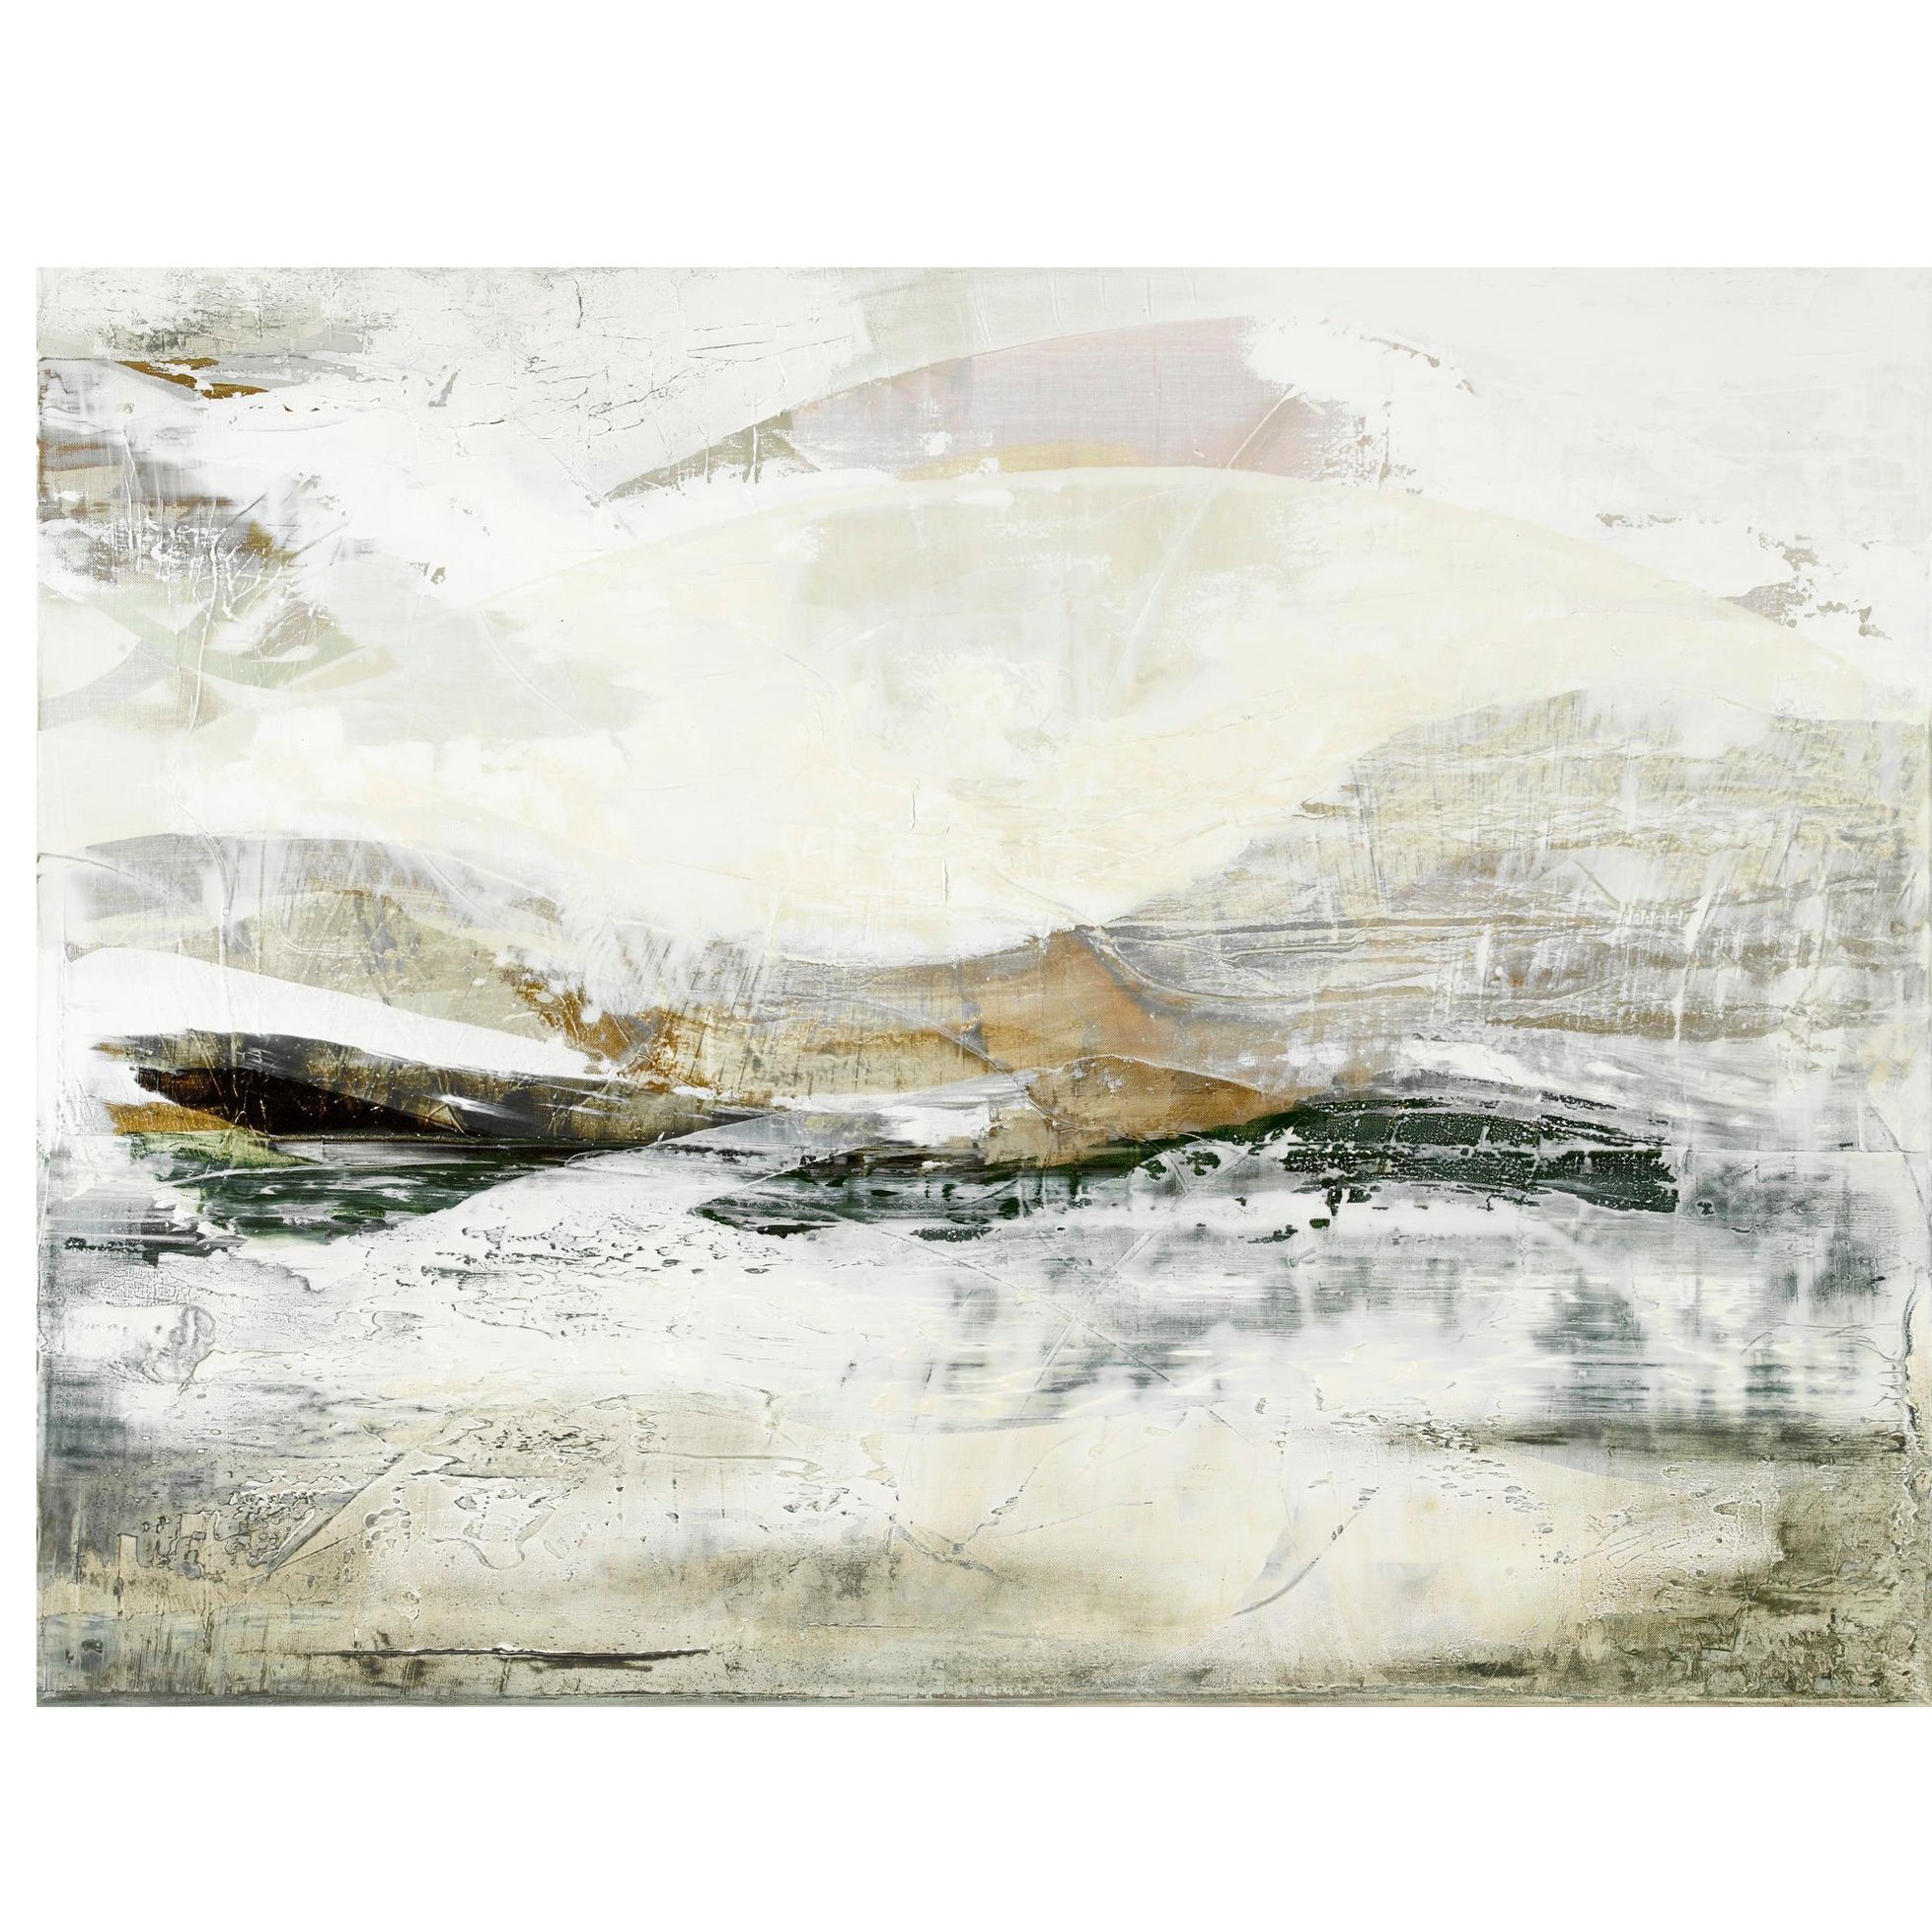 Zeitgenössische impressionistische Malerei, die die Sussex Downs im Winter einfängt